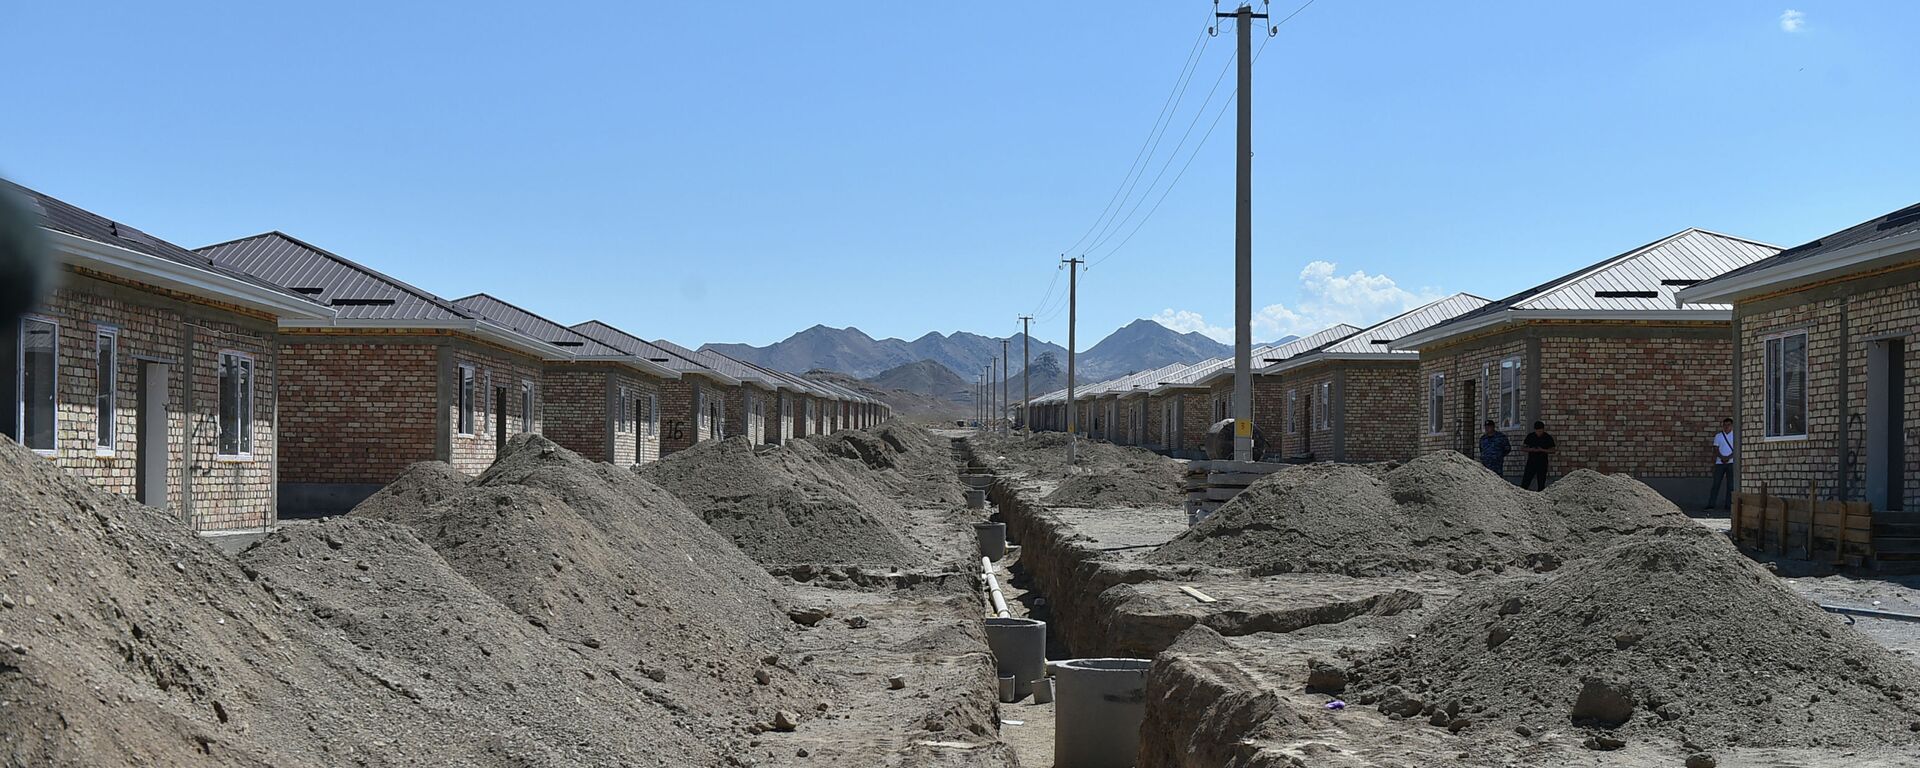 Строительство домов для семей, в которых есть погибшие в результате конфликта на кыргызско-таджикской границе - Sputnik Кыргызстан, 1920, 22.07.2021